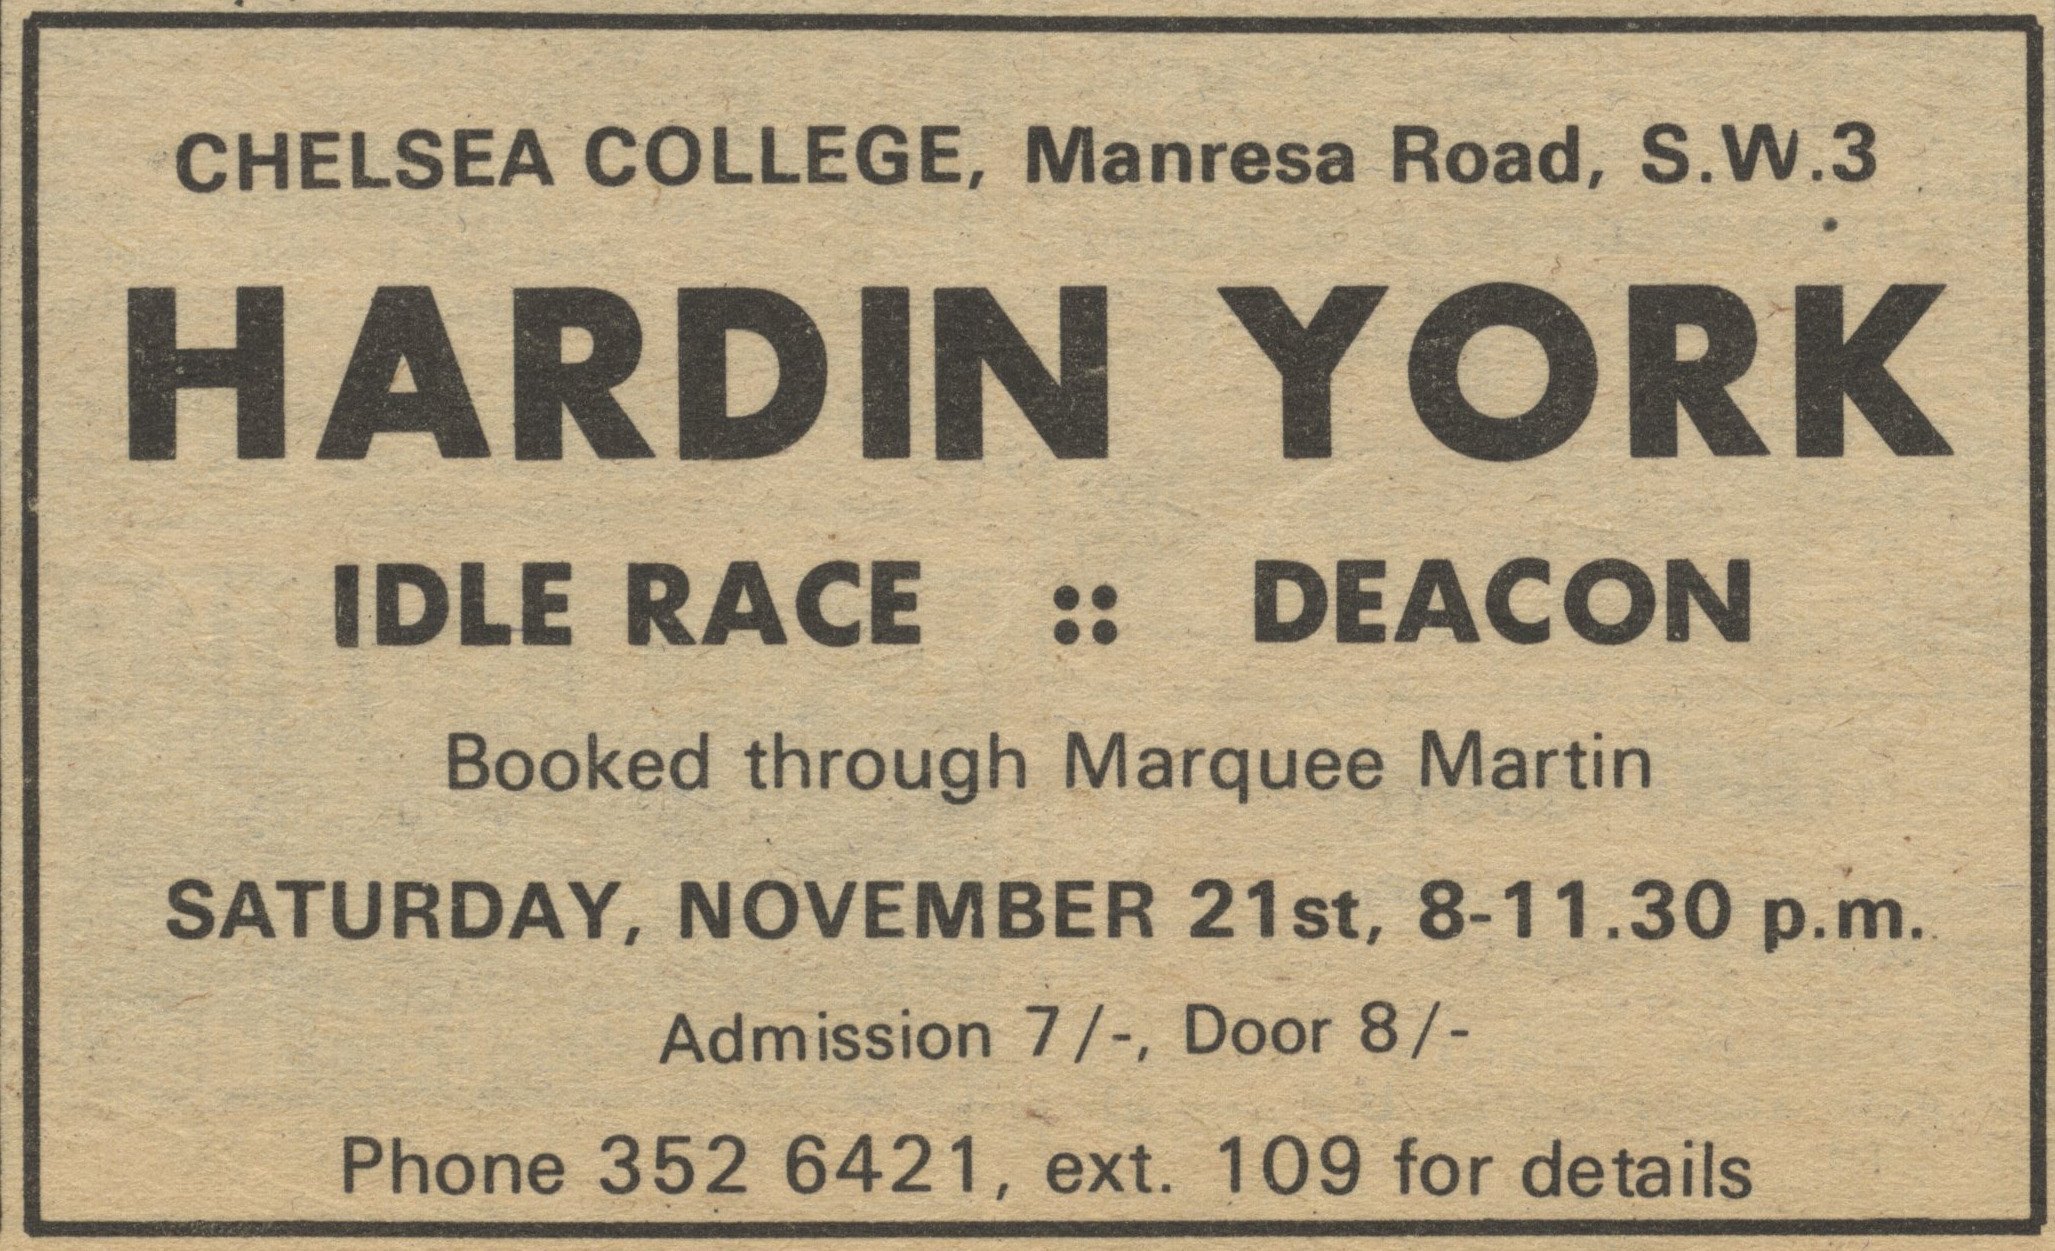 Deacon in London on 21.11.1970